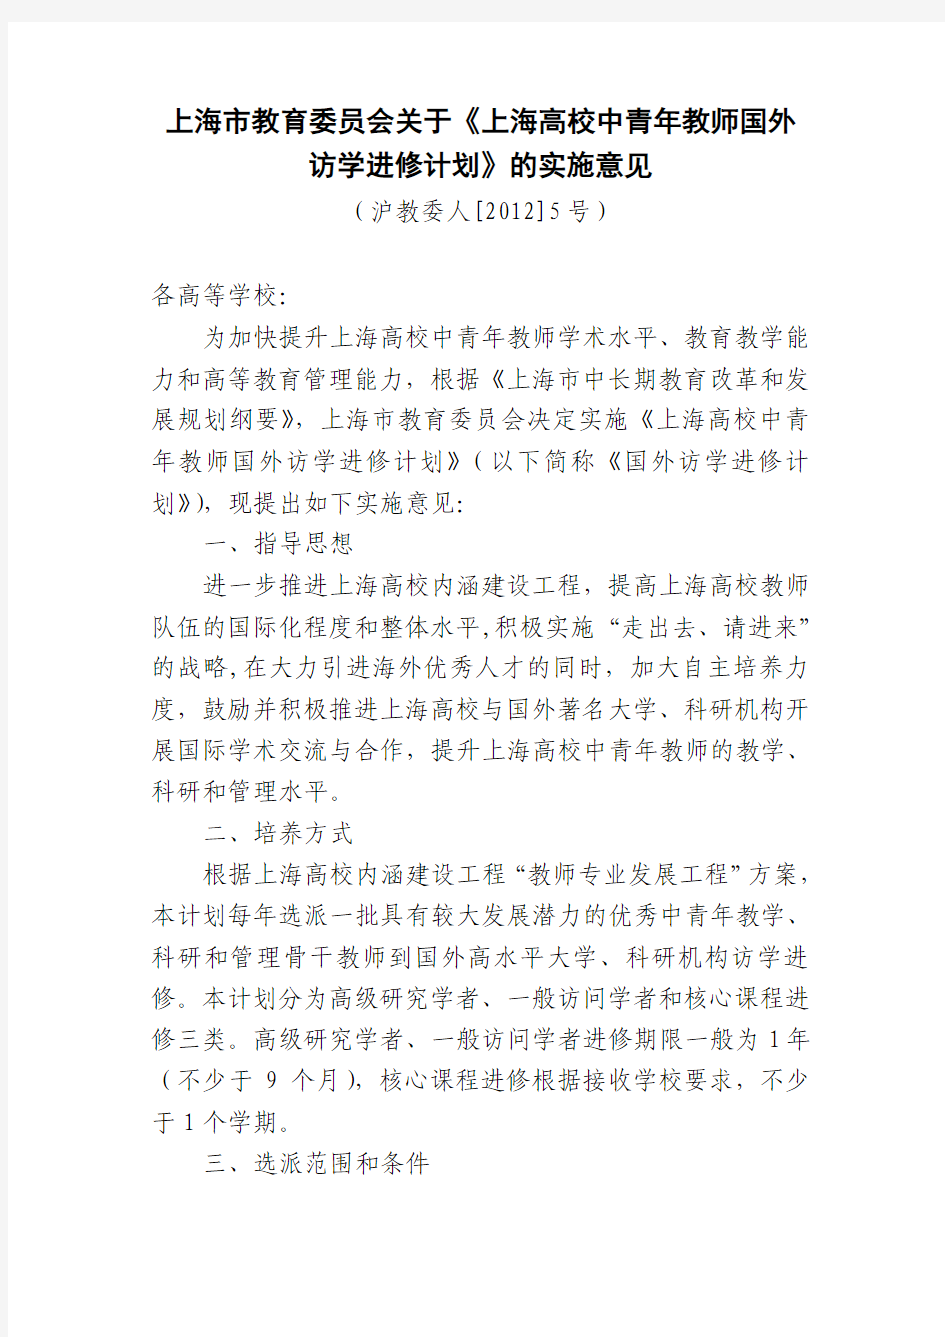 上海市教育委员会关于上海高校中青年教师国外访学进修计划的实施意见